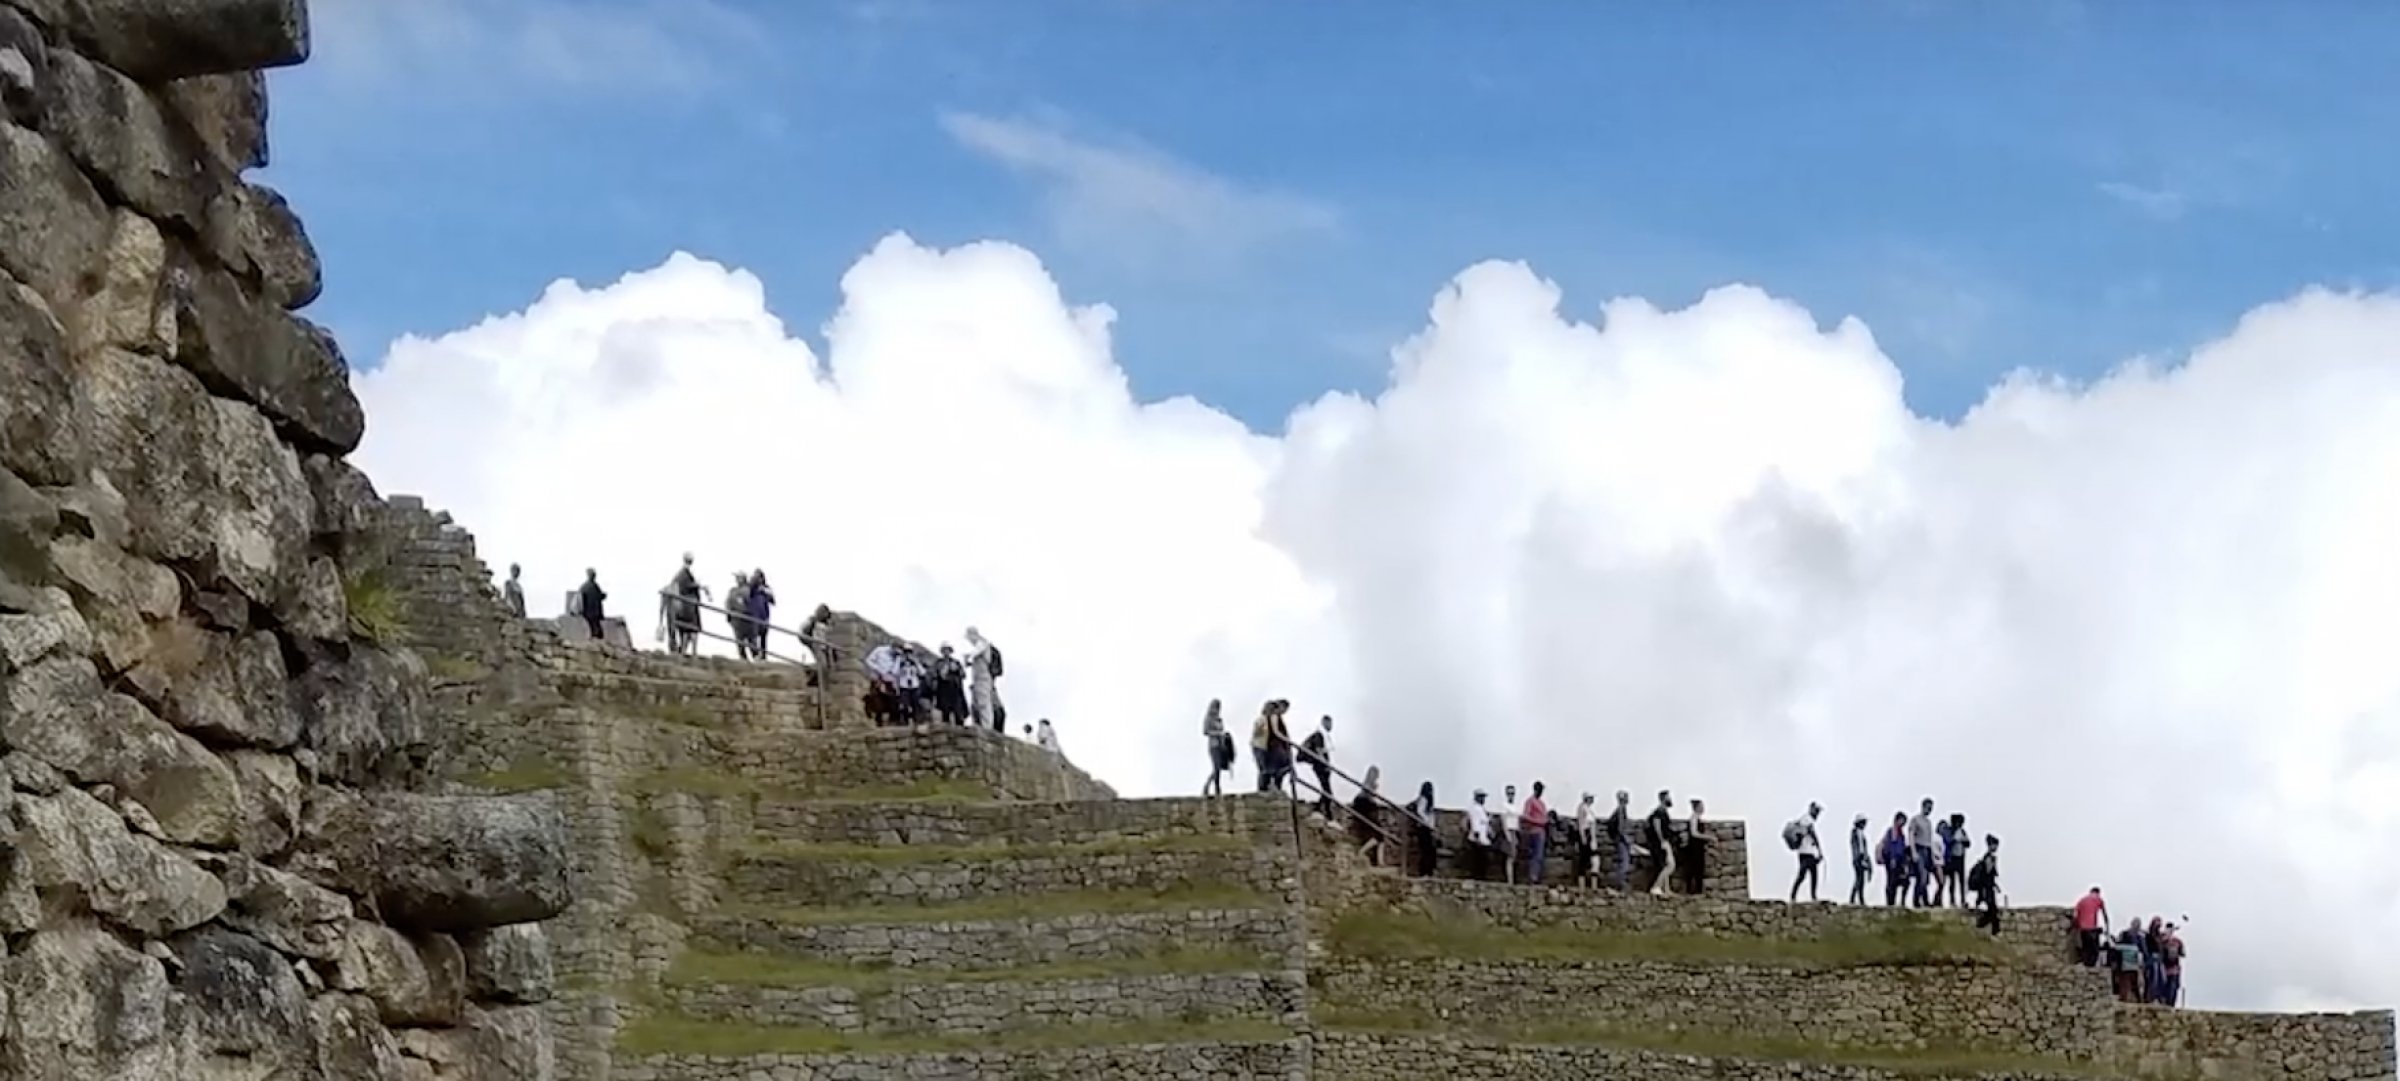 Group on Machu Pichu